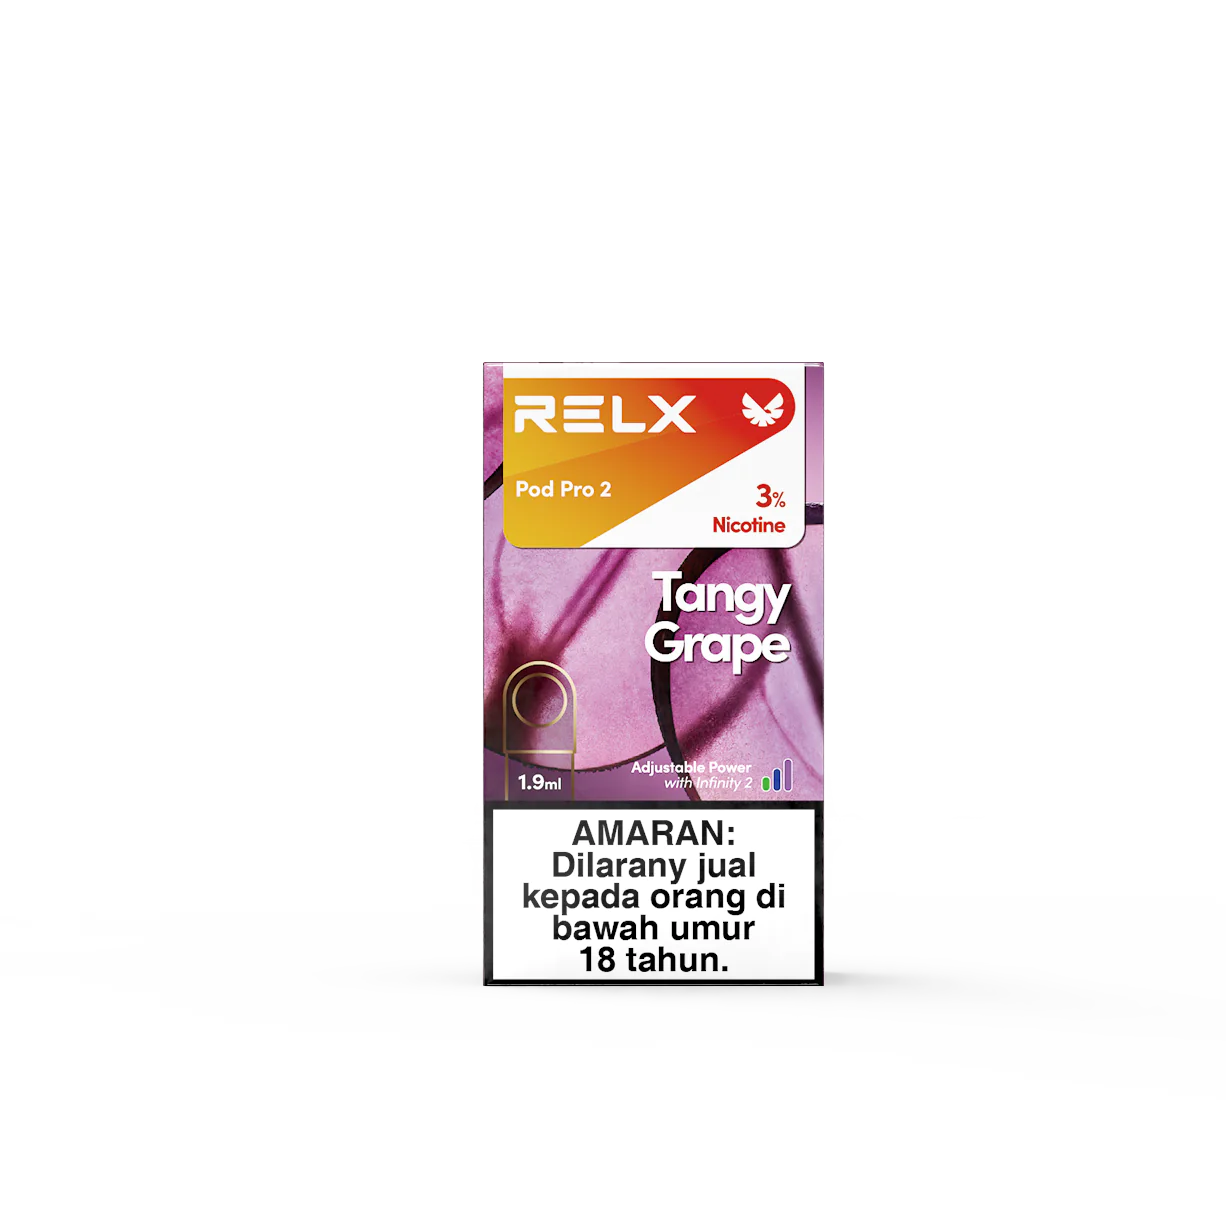 馬來西亞版 RELX Pod Pro 2 悅刻煙彈 4/5/6代通单只装